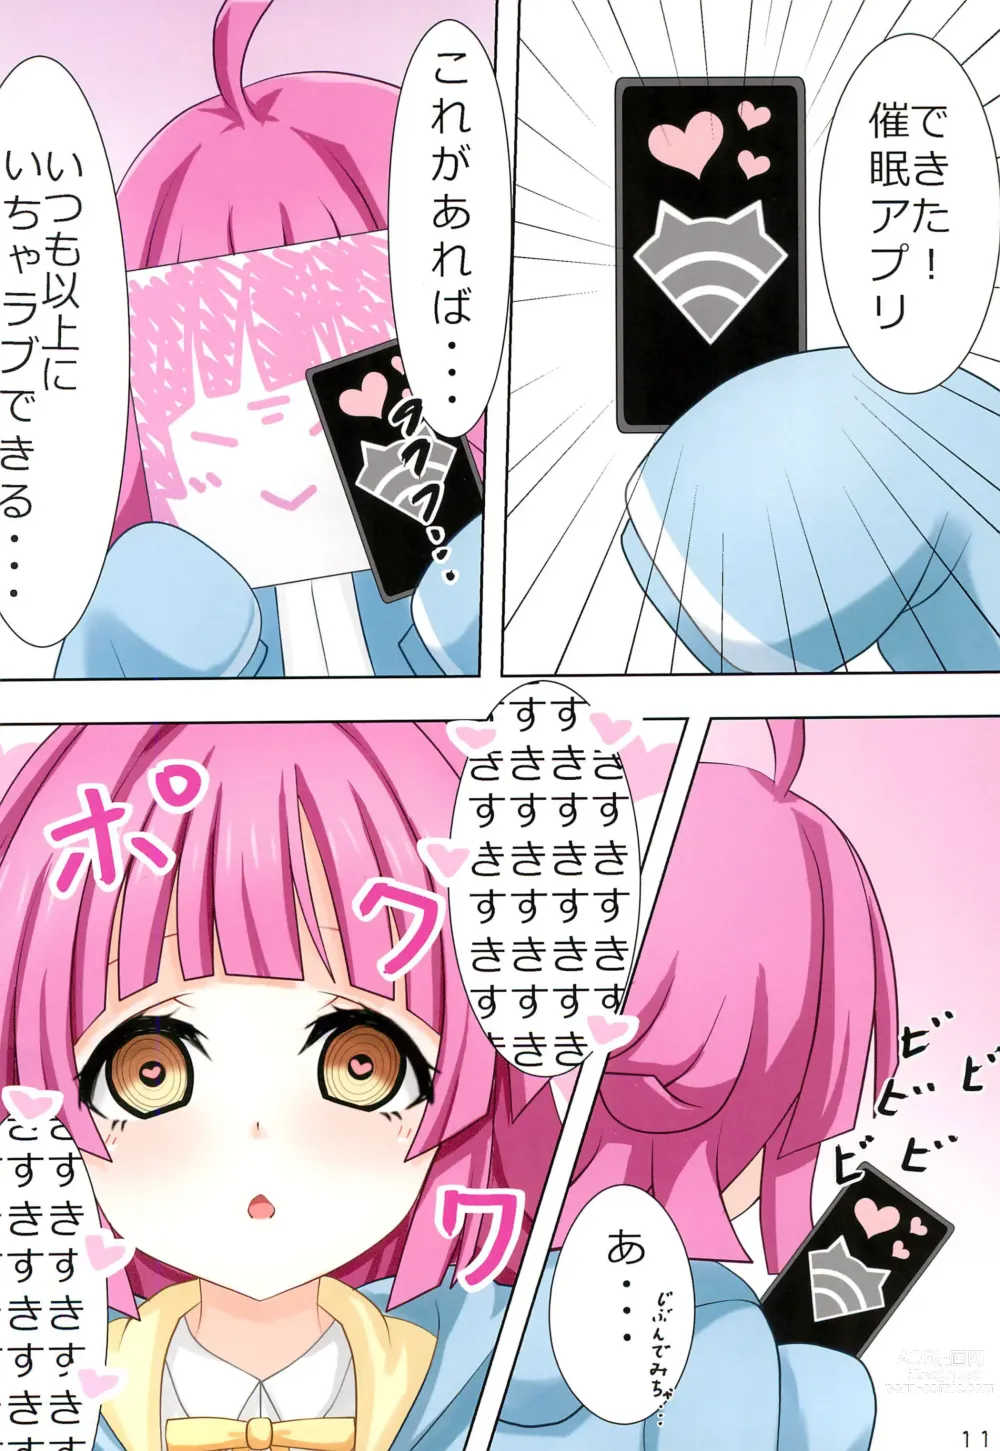 Page 12 of doujinshi Rina-chan to Kanaeru Monogatari!